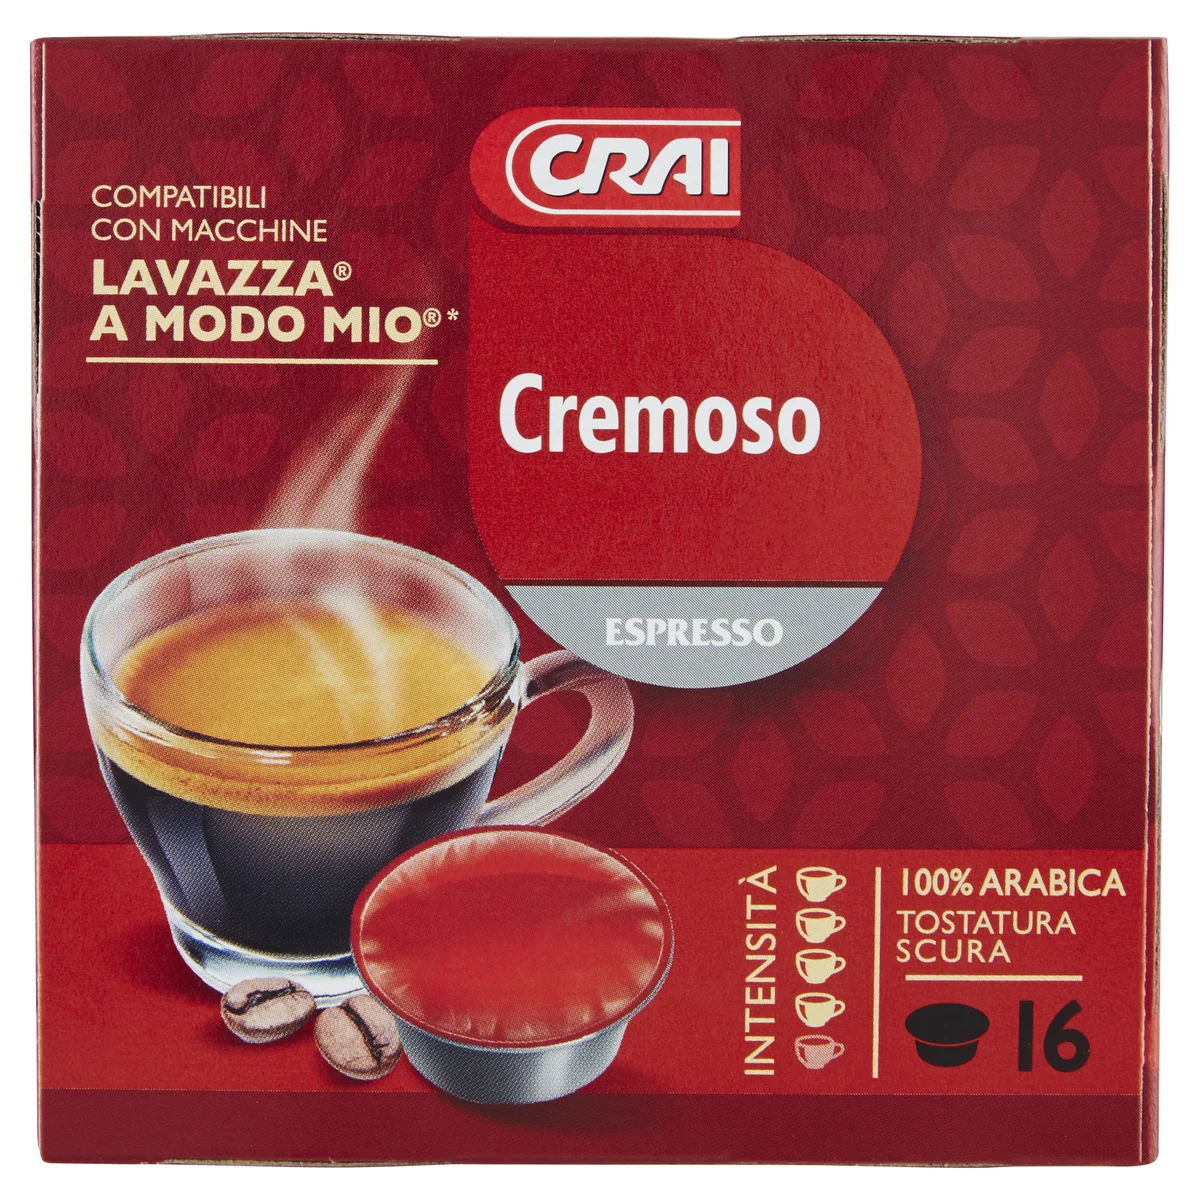 Crai Cremoso Espresso 16 Capsule Compatibili Con Macchine Lavazza